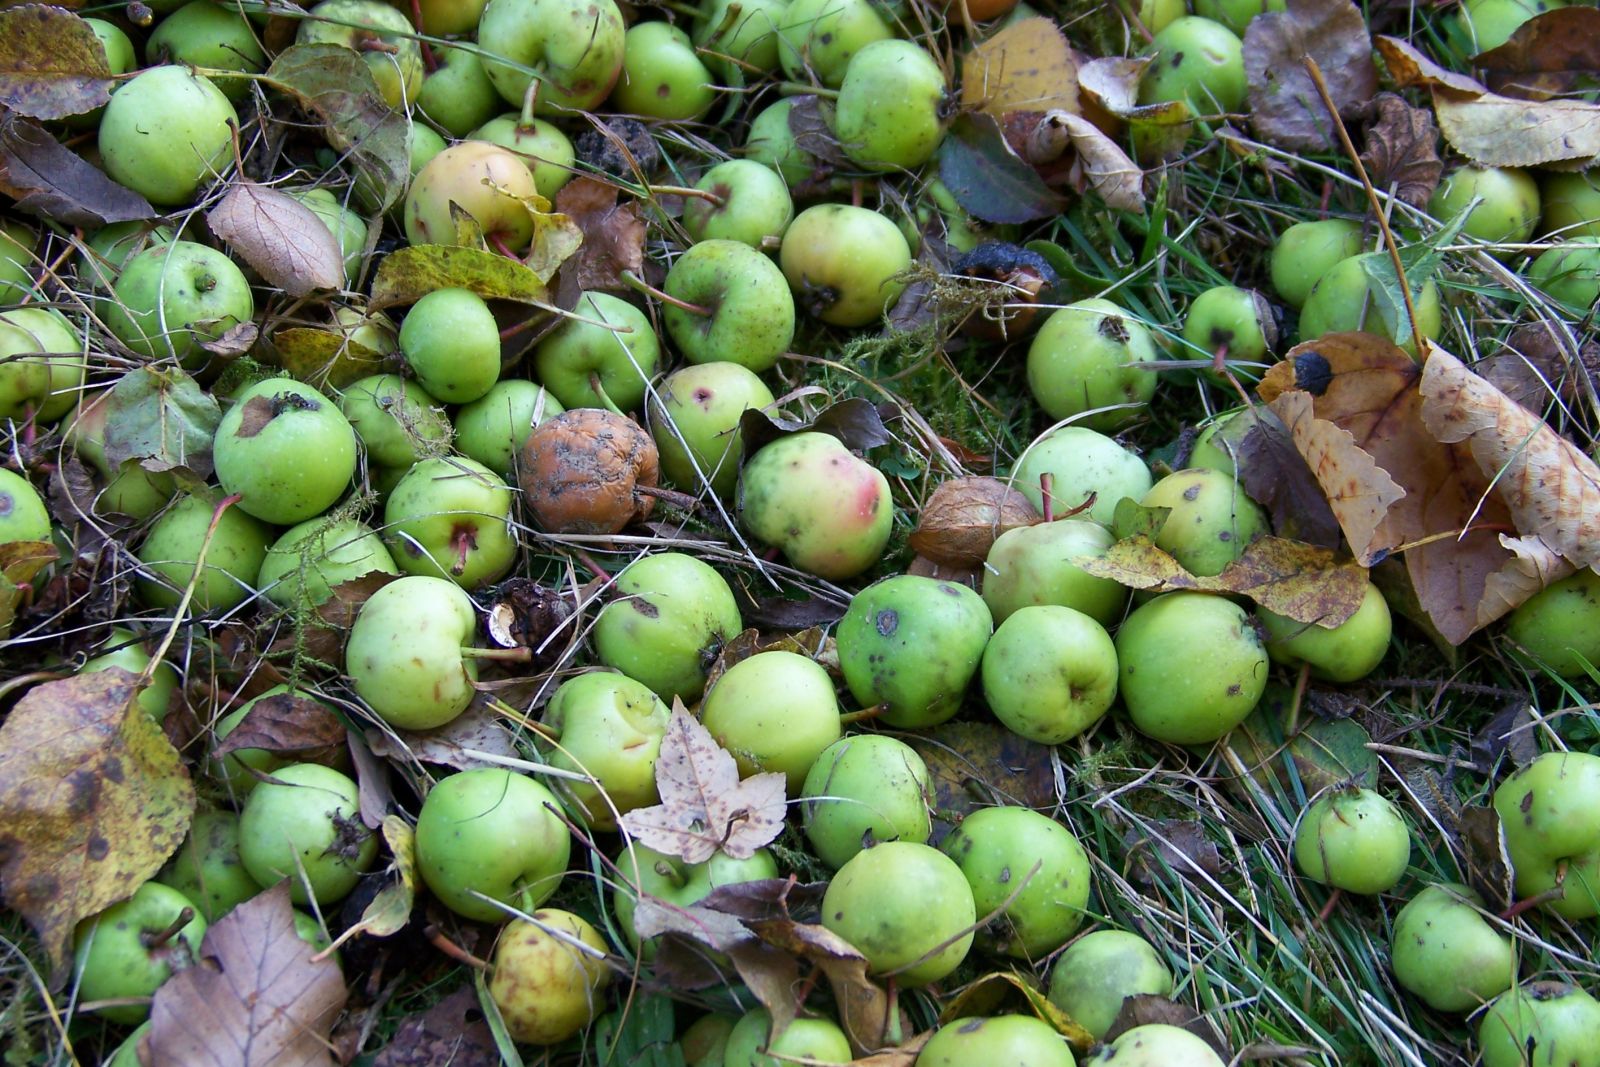 Wild-Apfel Früchte
Foto: Anke Proft